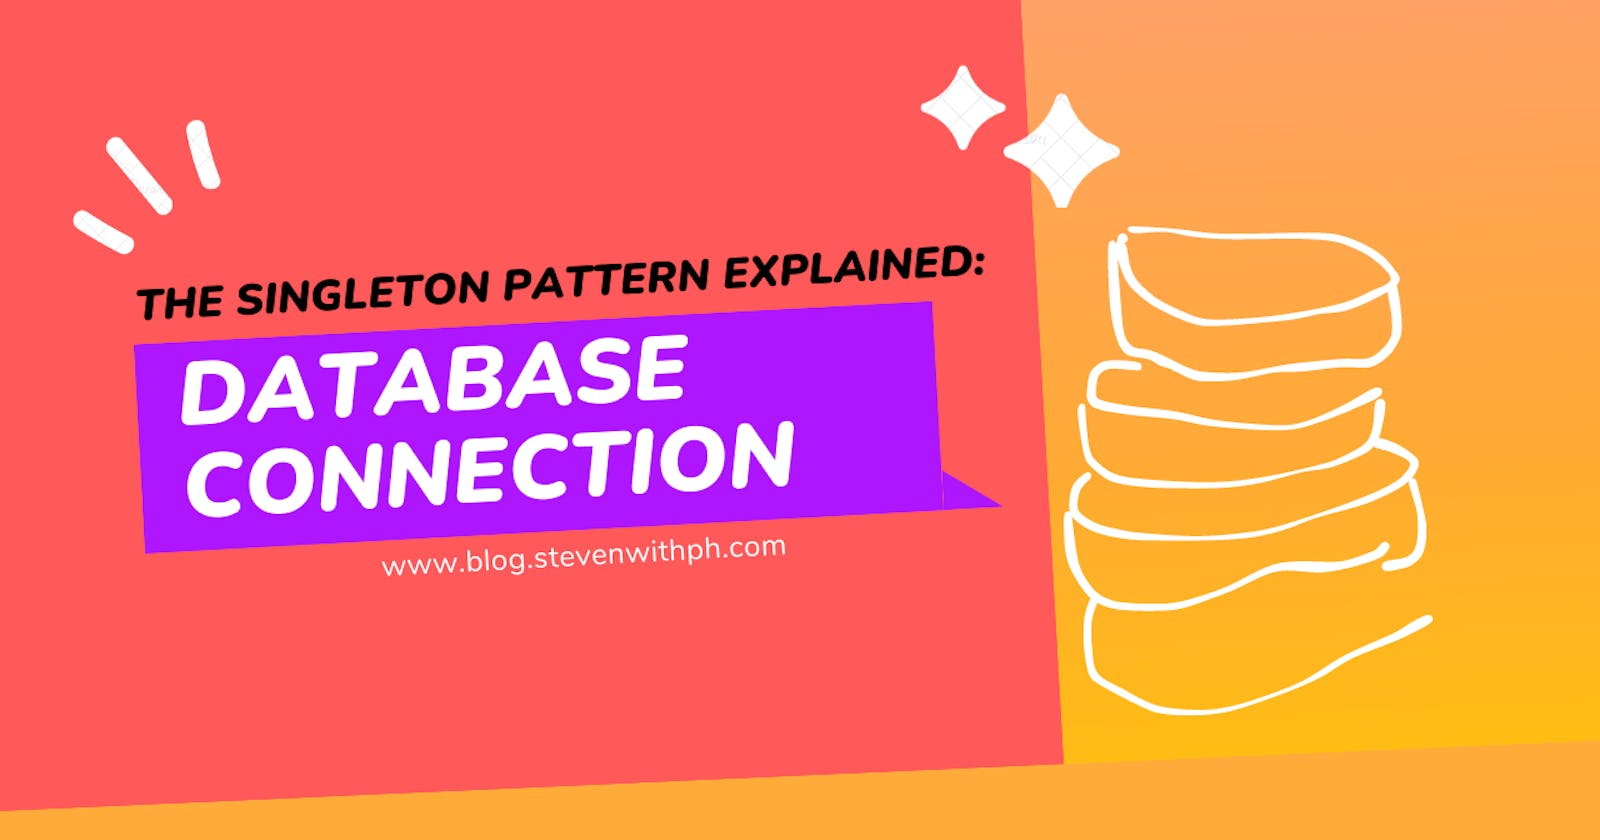 The Singleton Pattern Explained: Database Connection